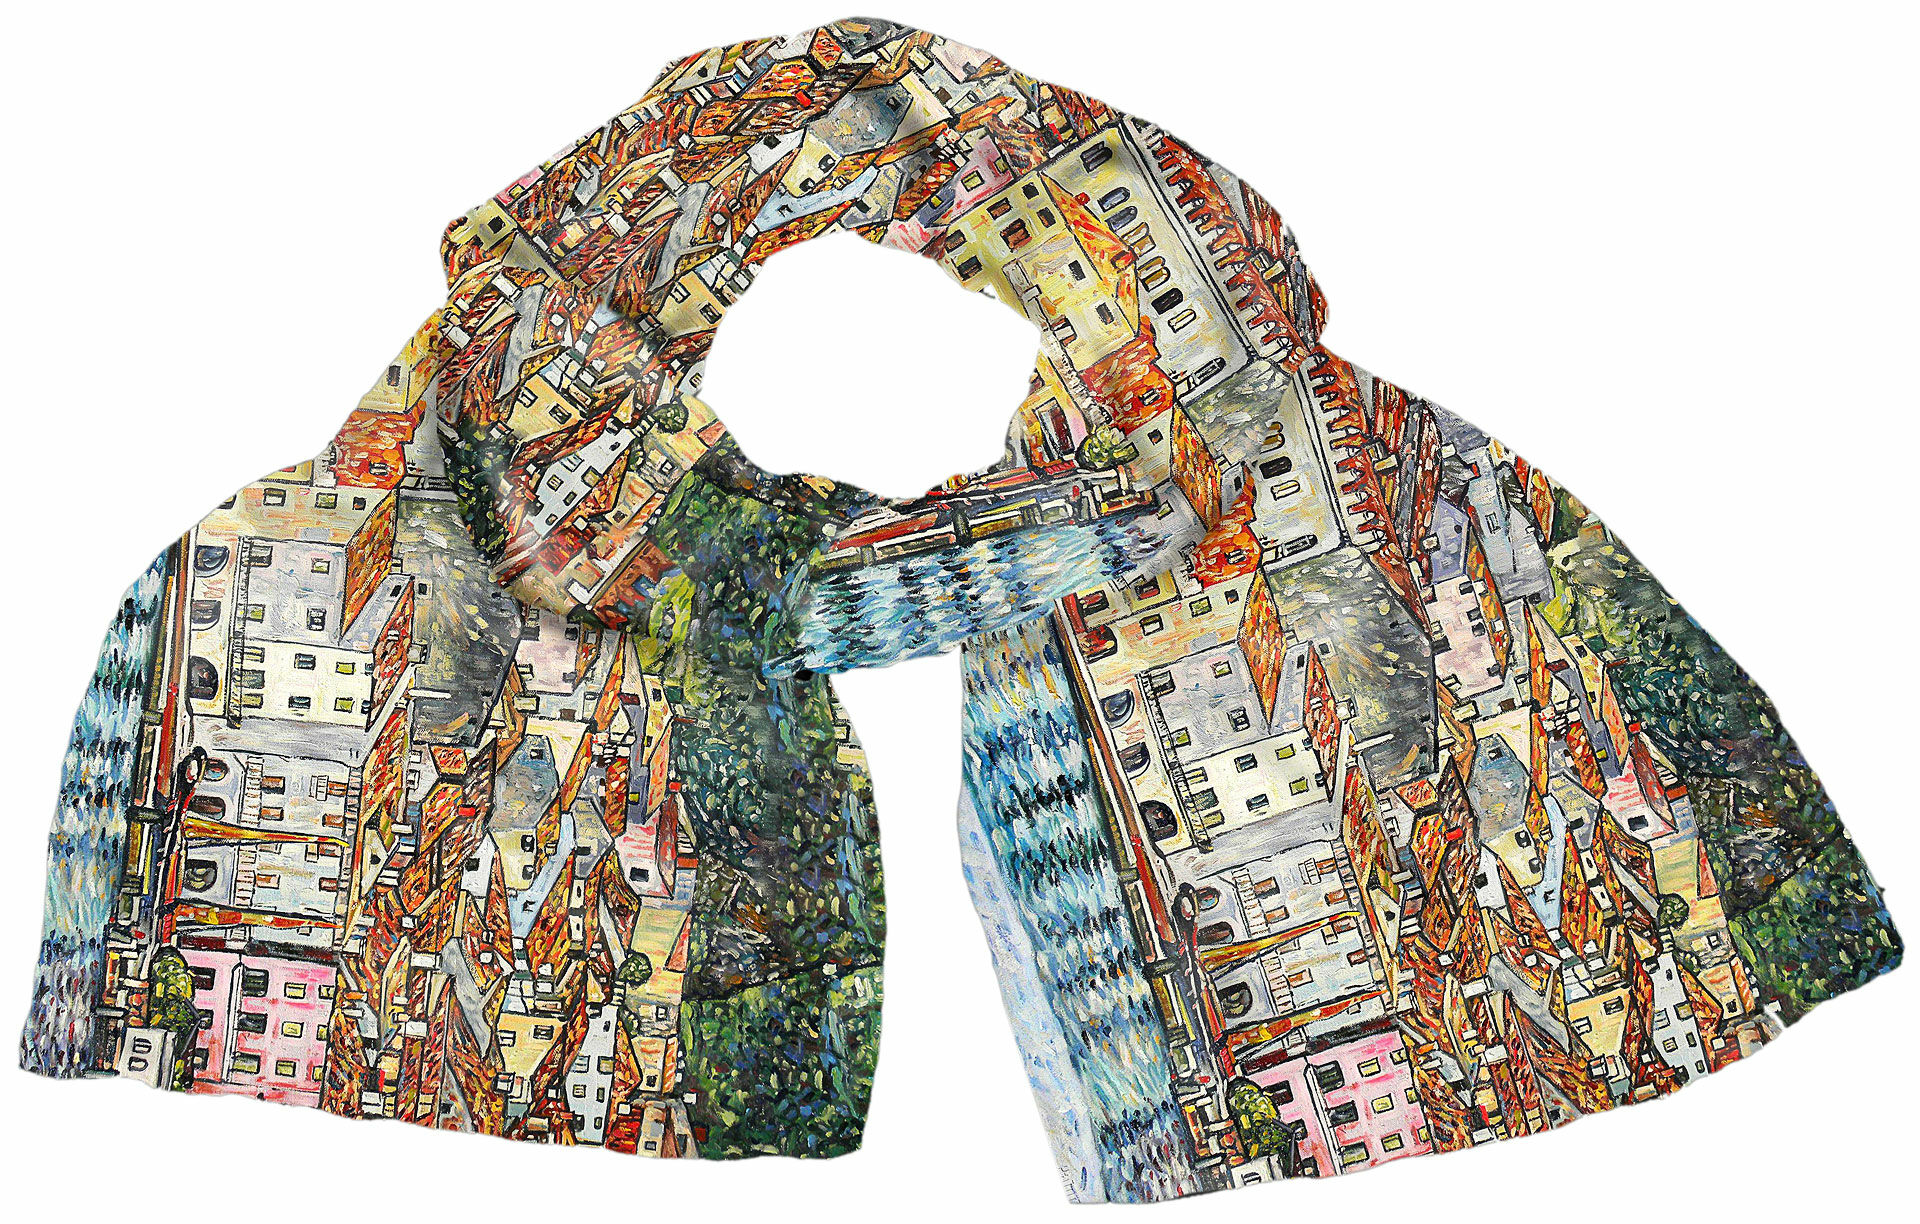 Silketørklæde "Malcesine" von Gustav Klimt